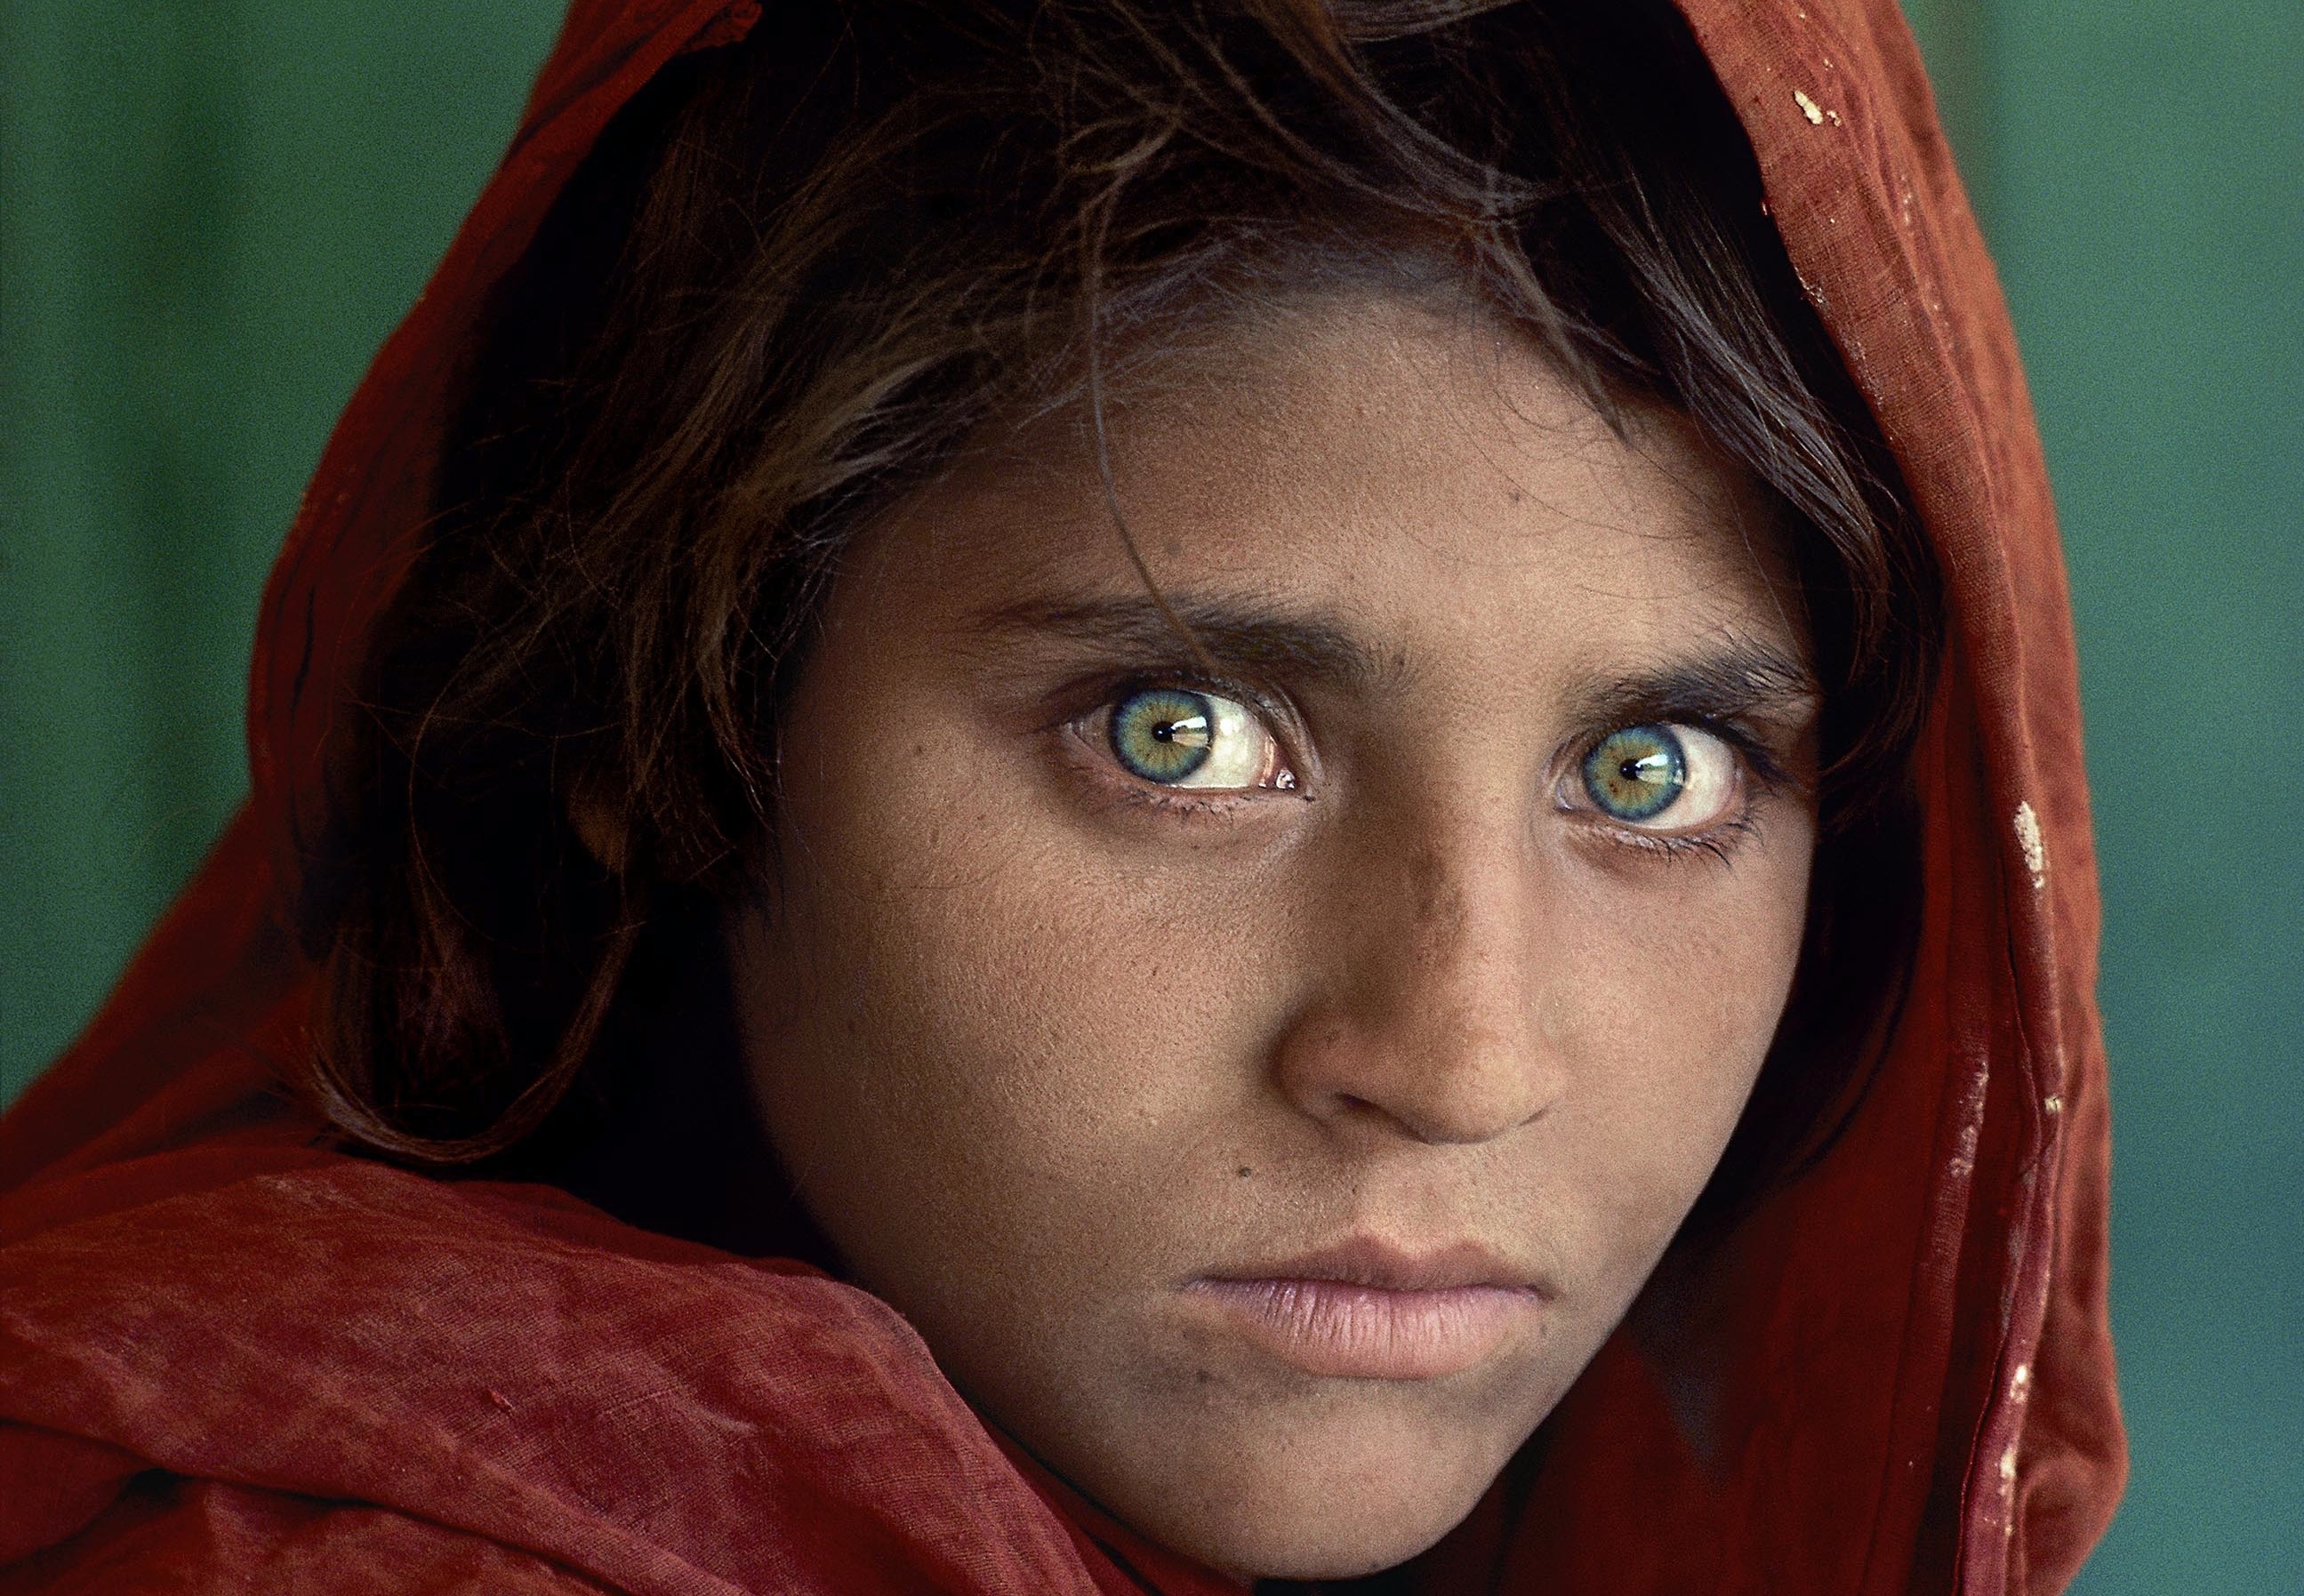 Afghan Girl, Pakistan, 1984, Steve McCurry 